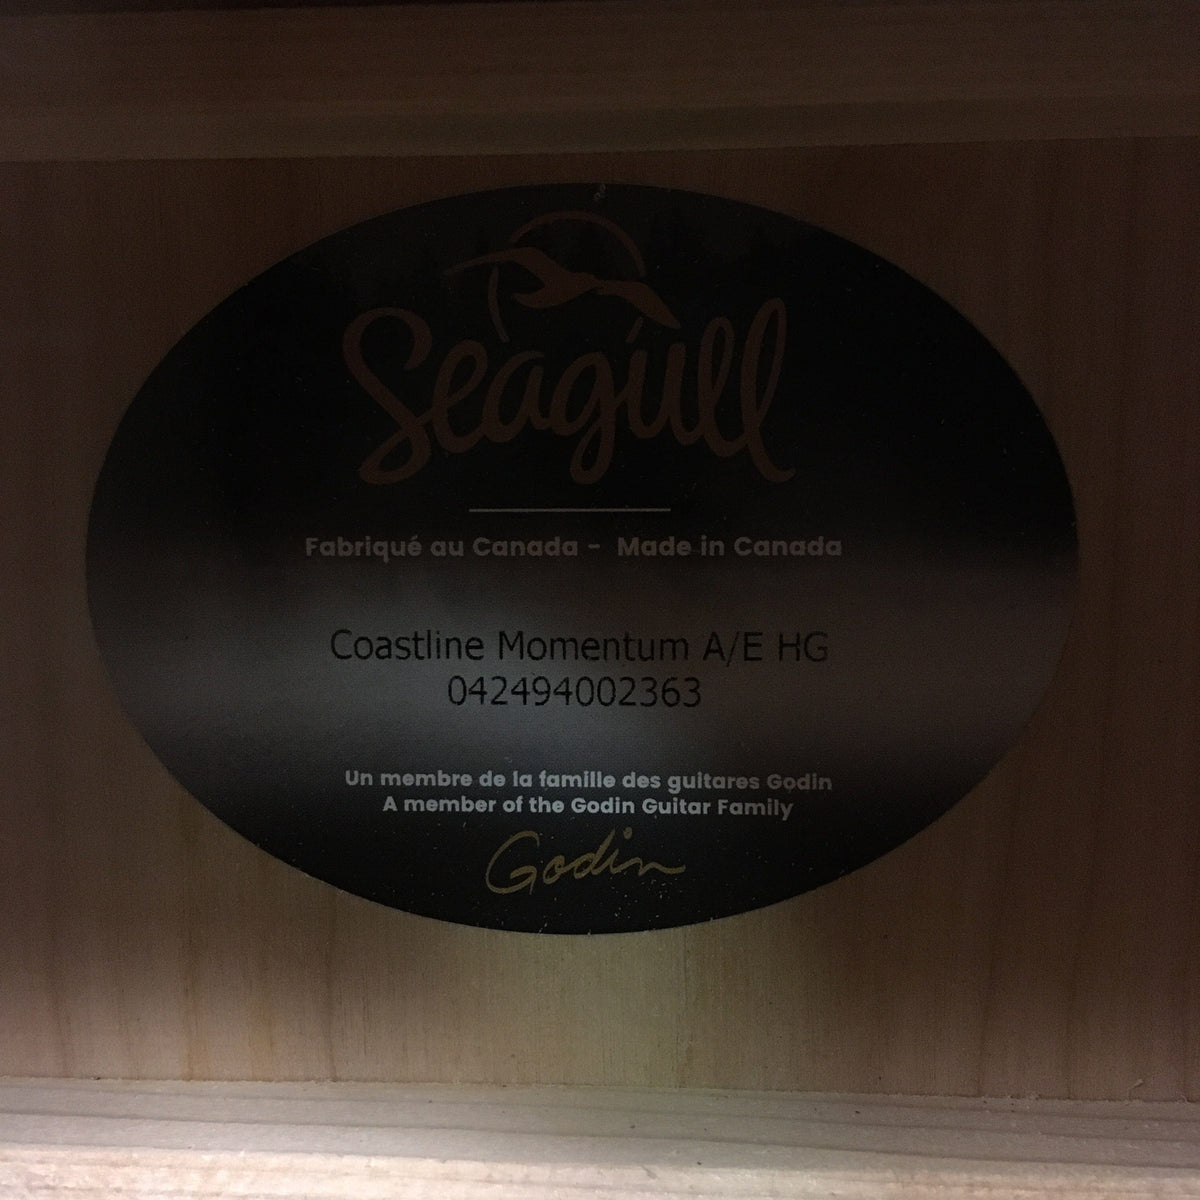 Seagull Coastline Momentum HG A/E Guitars on Main